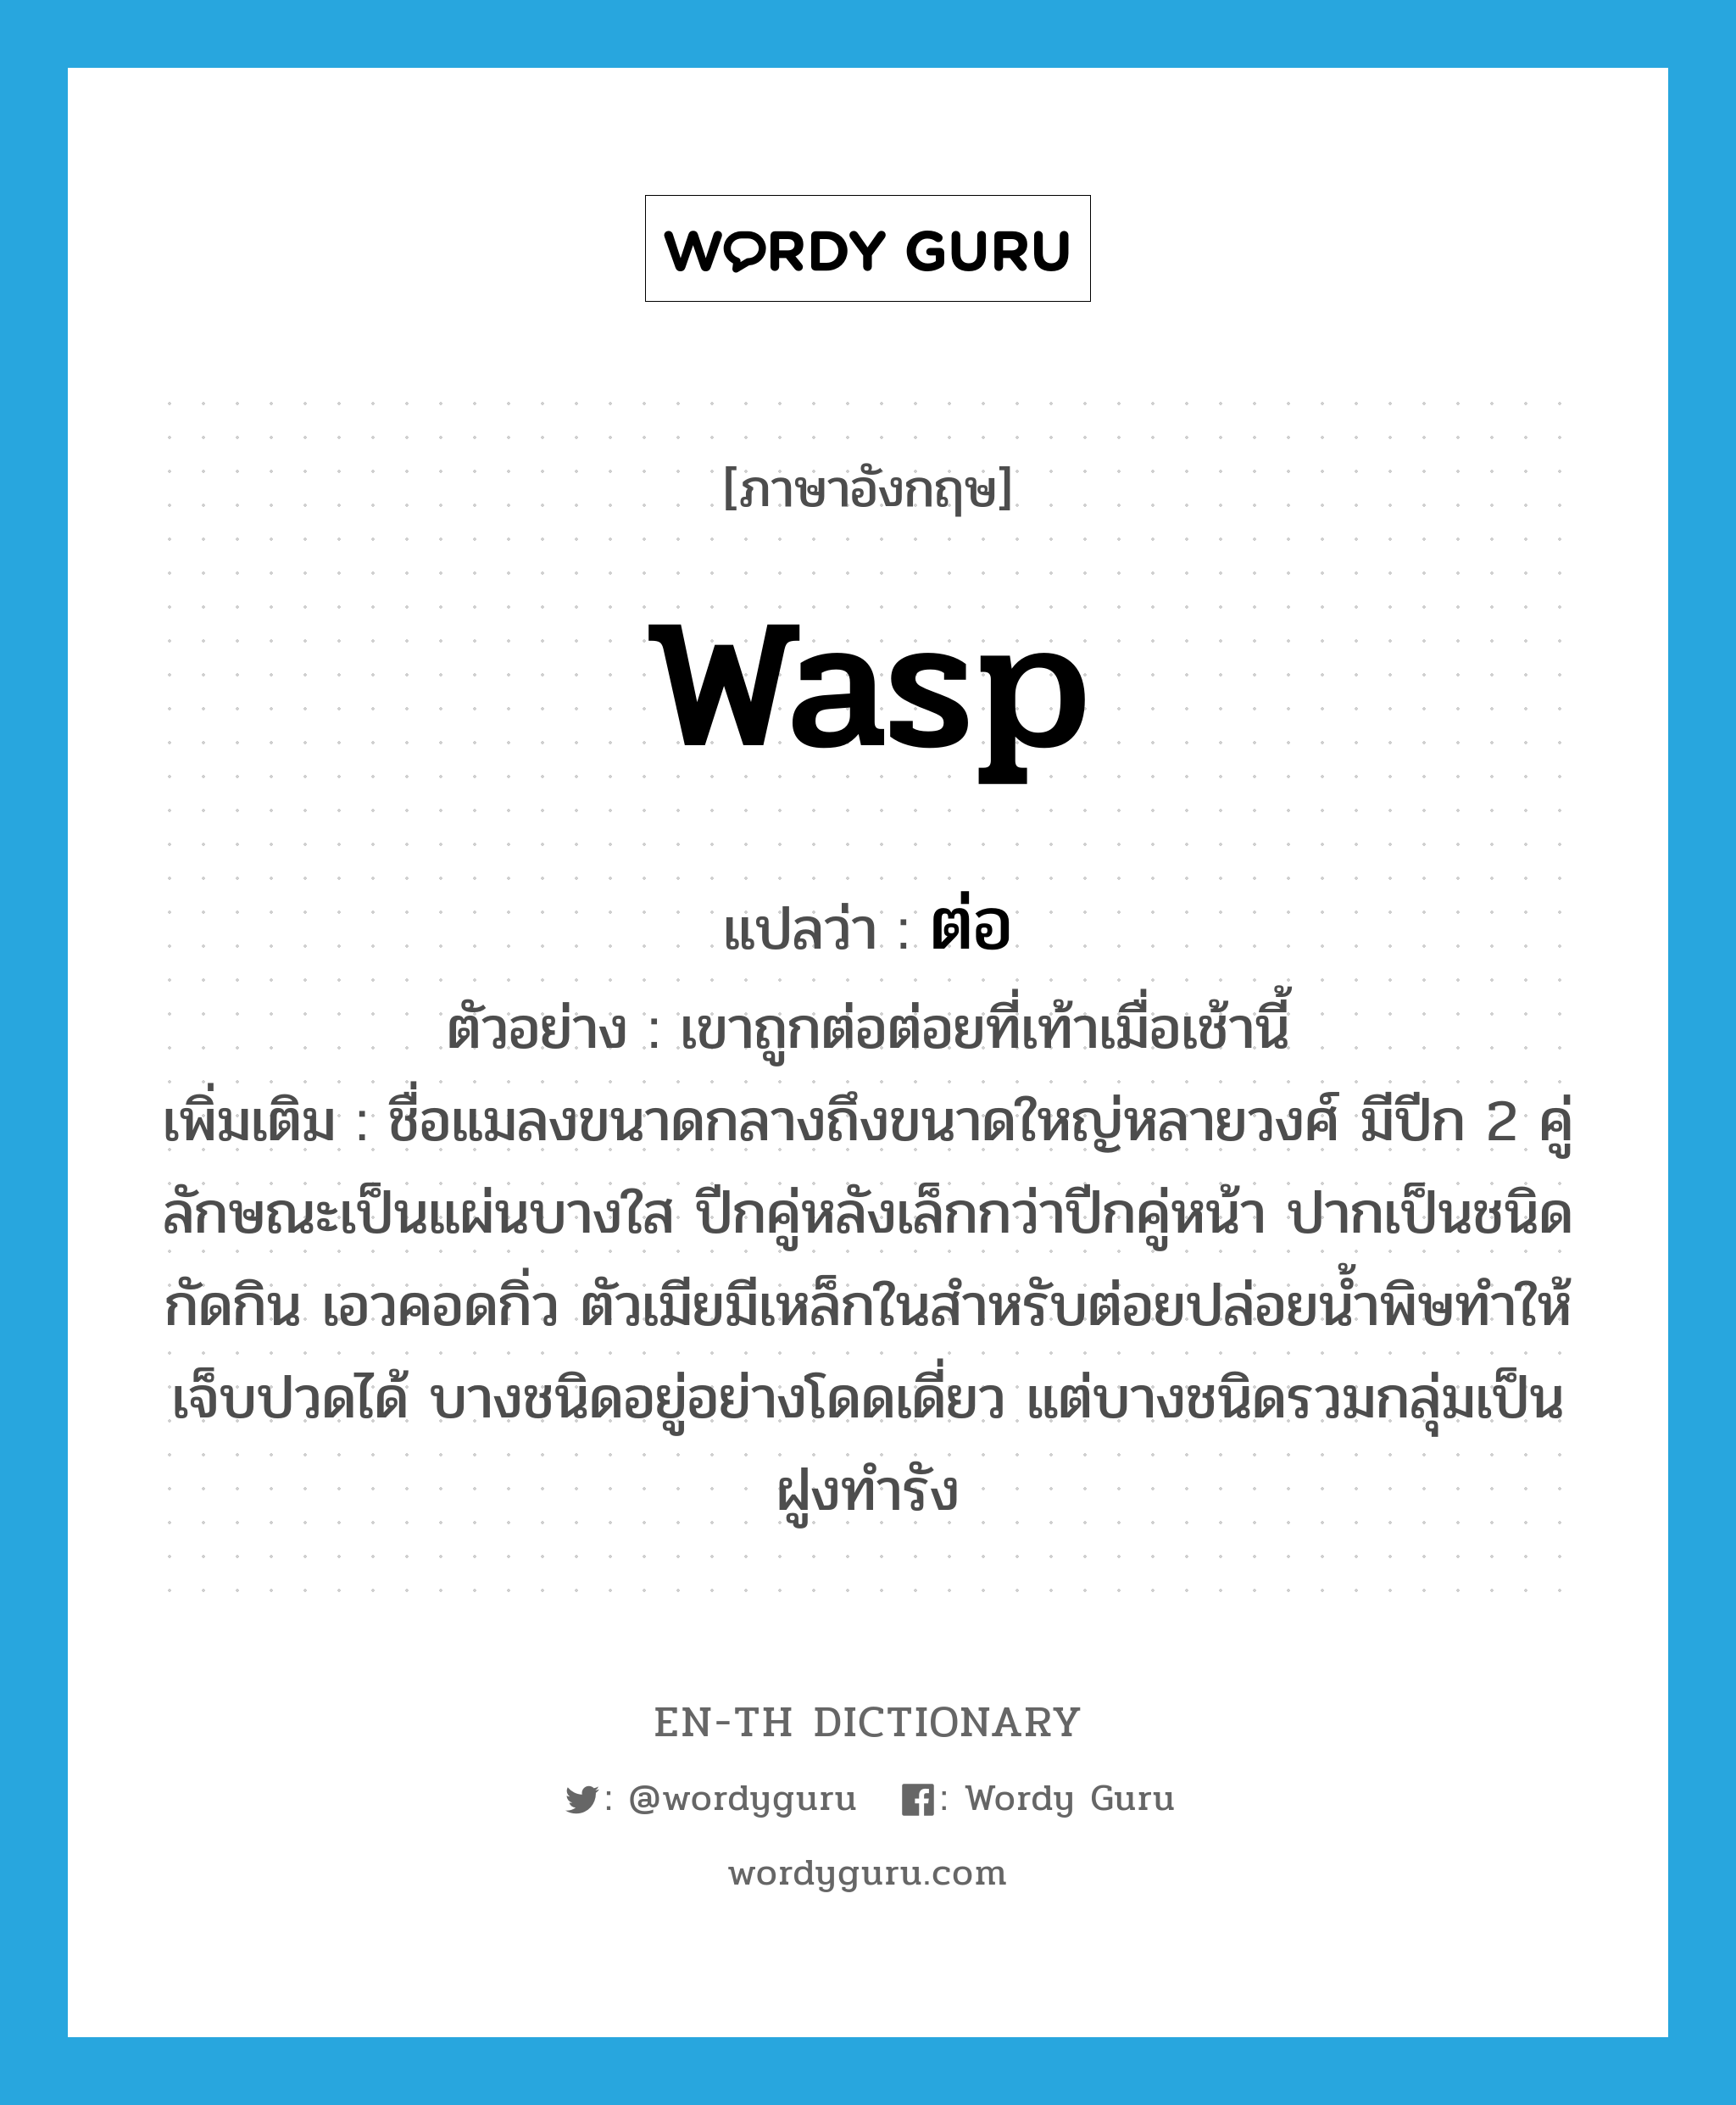 WASP แปลว่า?, คำศัพท์ภาษาอังกฤษ wasp แปลว่า ต่อ ประเภท N ตัวอย่าง เขาถูกต่อต่อยที่เท้าเมื่อเช้านี้ เพิ่มเติม ชื่อแมลงขนาดกลางถึงขนาดใหญ่หลายวงศ์ มีปีก 2 คู่ ลักษณะเป็นแผ่นบางใส ปีกคู่หลังเล็กกว่าปีกคู่หน้า ปากเป็นชนิดกัดกิน เอวคอดกิ่ว ตัวเมียมีเหล็กในสำหรับต่อยปล่อยน้ำพิษทำให้เจ็บปวดได้ บางชนิดอยู่อย่างโดดเดี่ยว แต่บางชนิดรวมกลุ่มเป็นฝูงทำรัง หมวด N